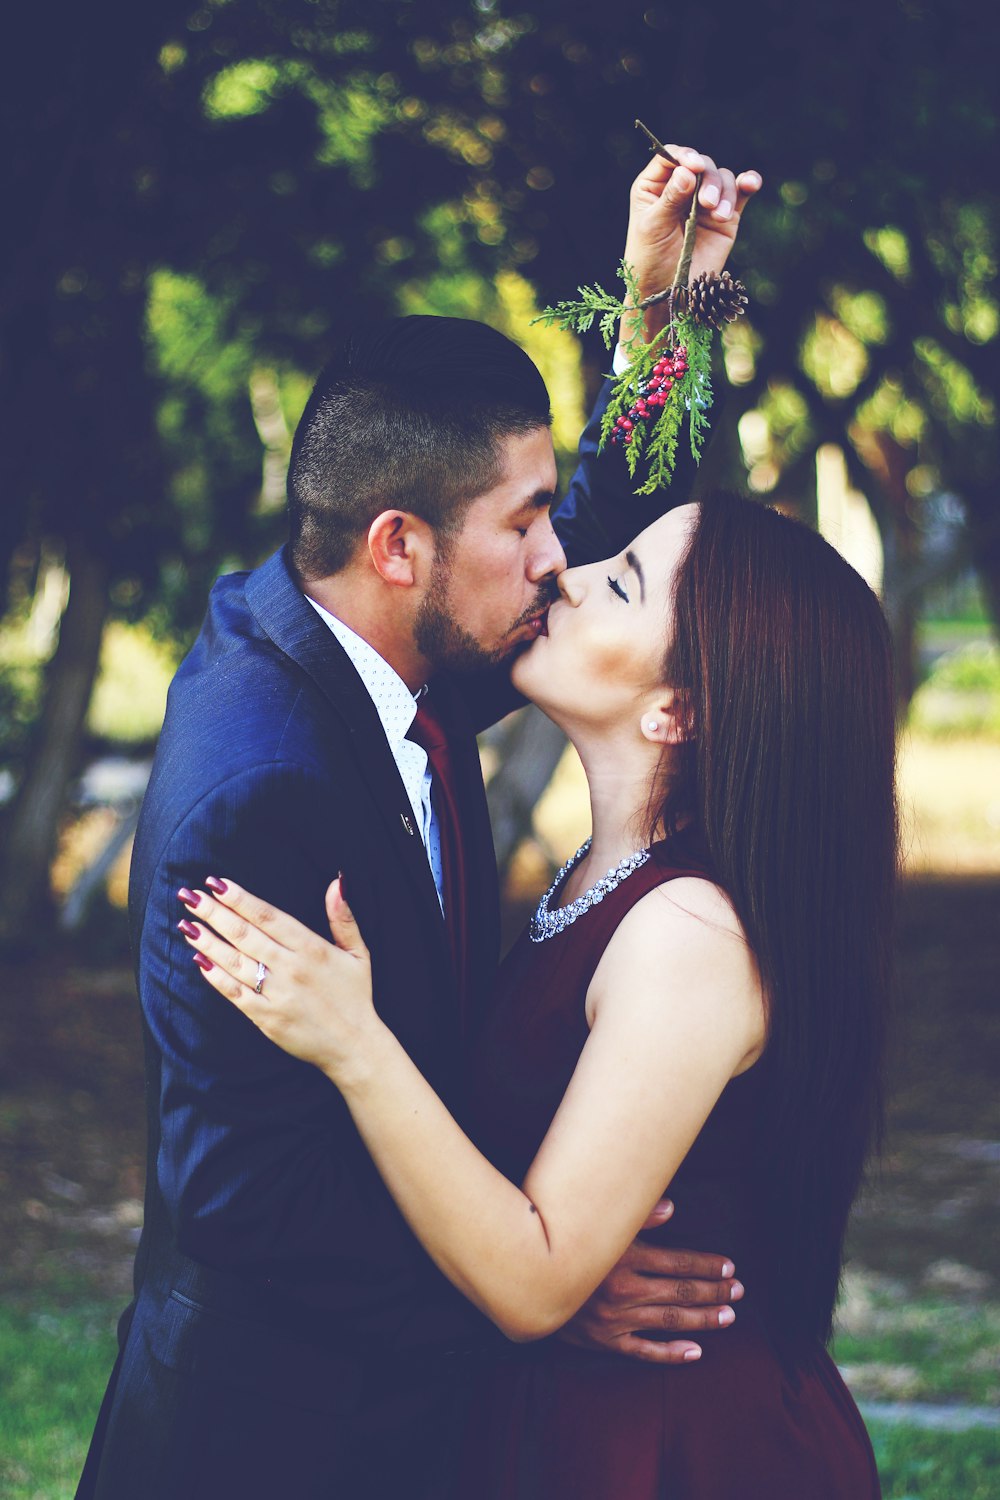 Mann und Frau küssen sich in der Nähe von Bäumen